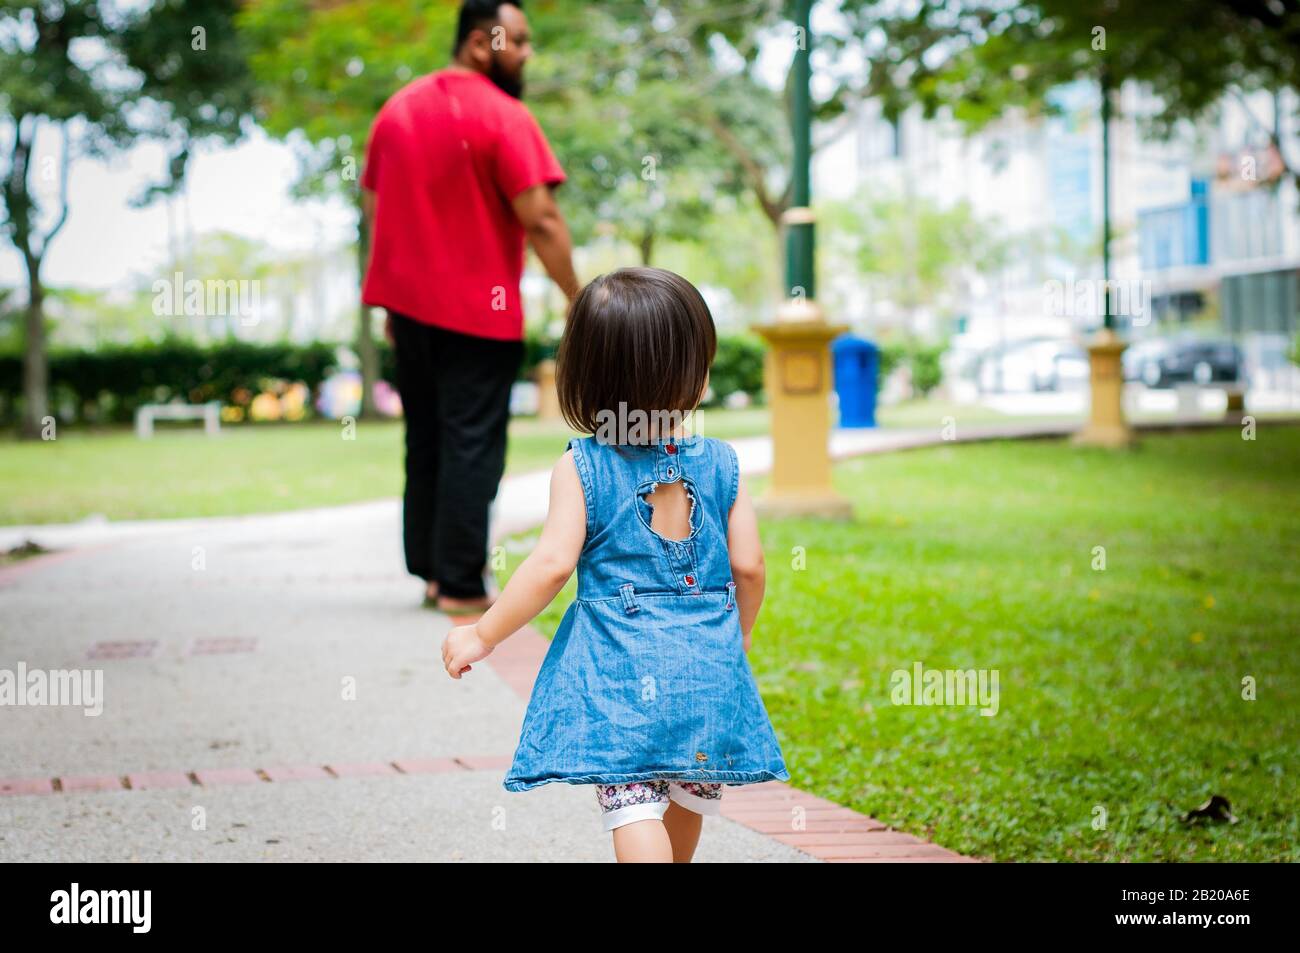 Asiatische 1-jährigen Kleinkind besetzt ist, gehen mit ihrem Vater in einem tropischen Park am Morgen. Exploration und Vaterschaft Konzept. Stockfoto